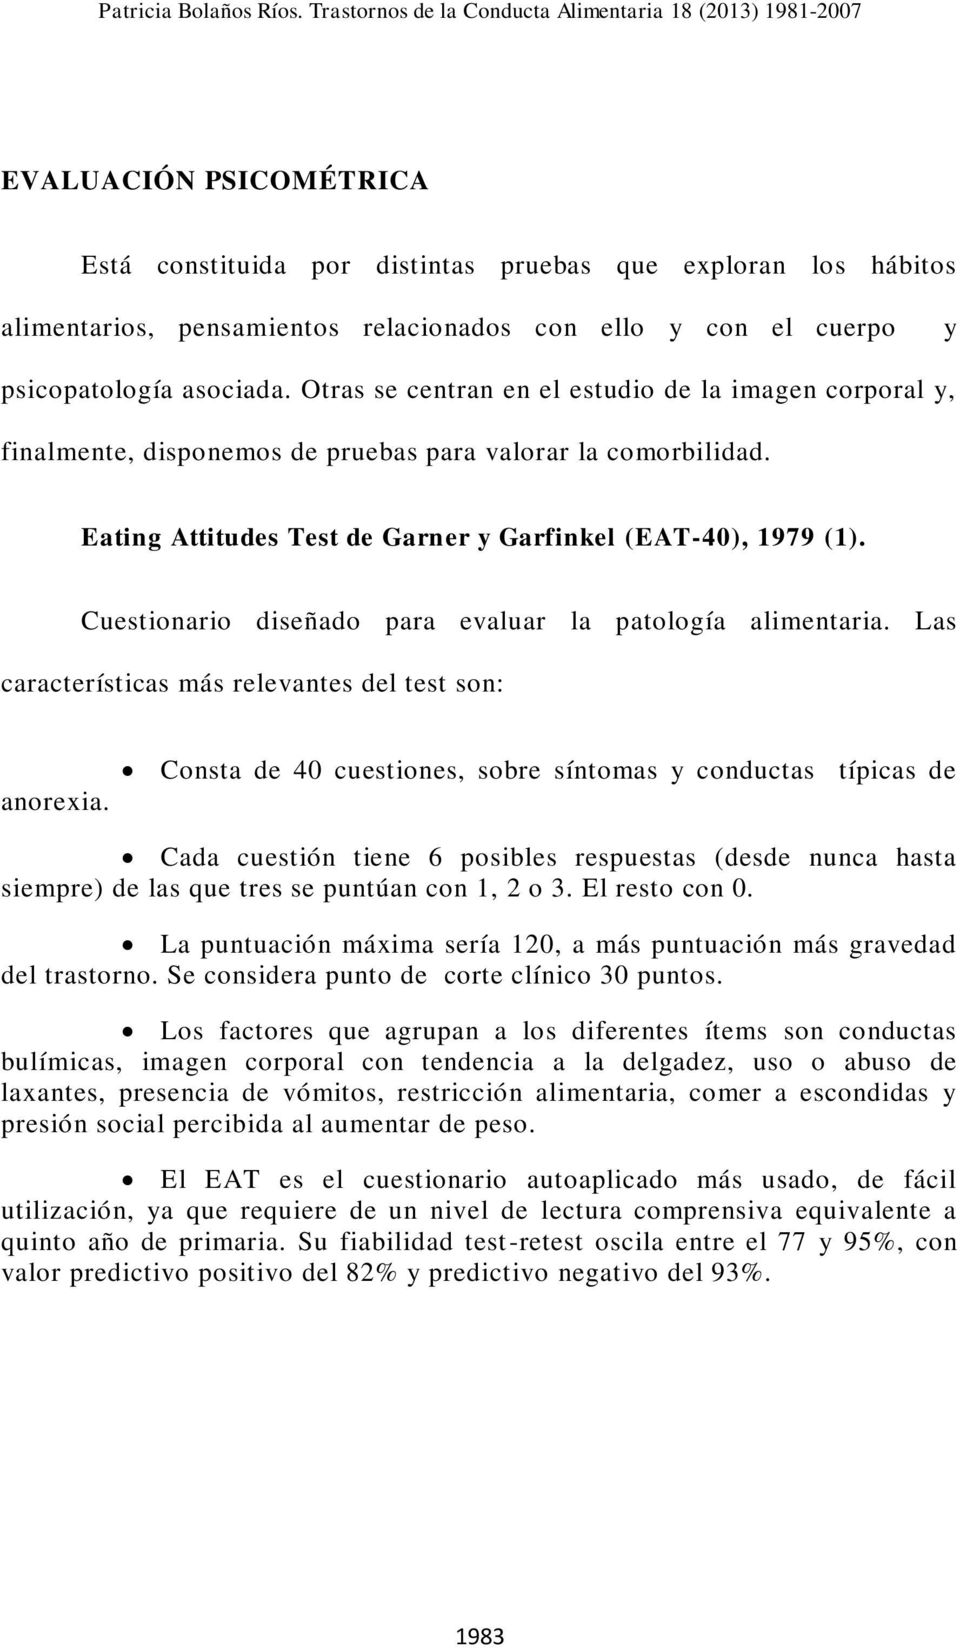 Cuestionario diseñado para evaluar la patología alimentaria. Las características más relevantes del test son: anorexia.